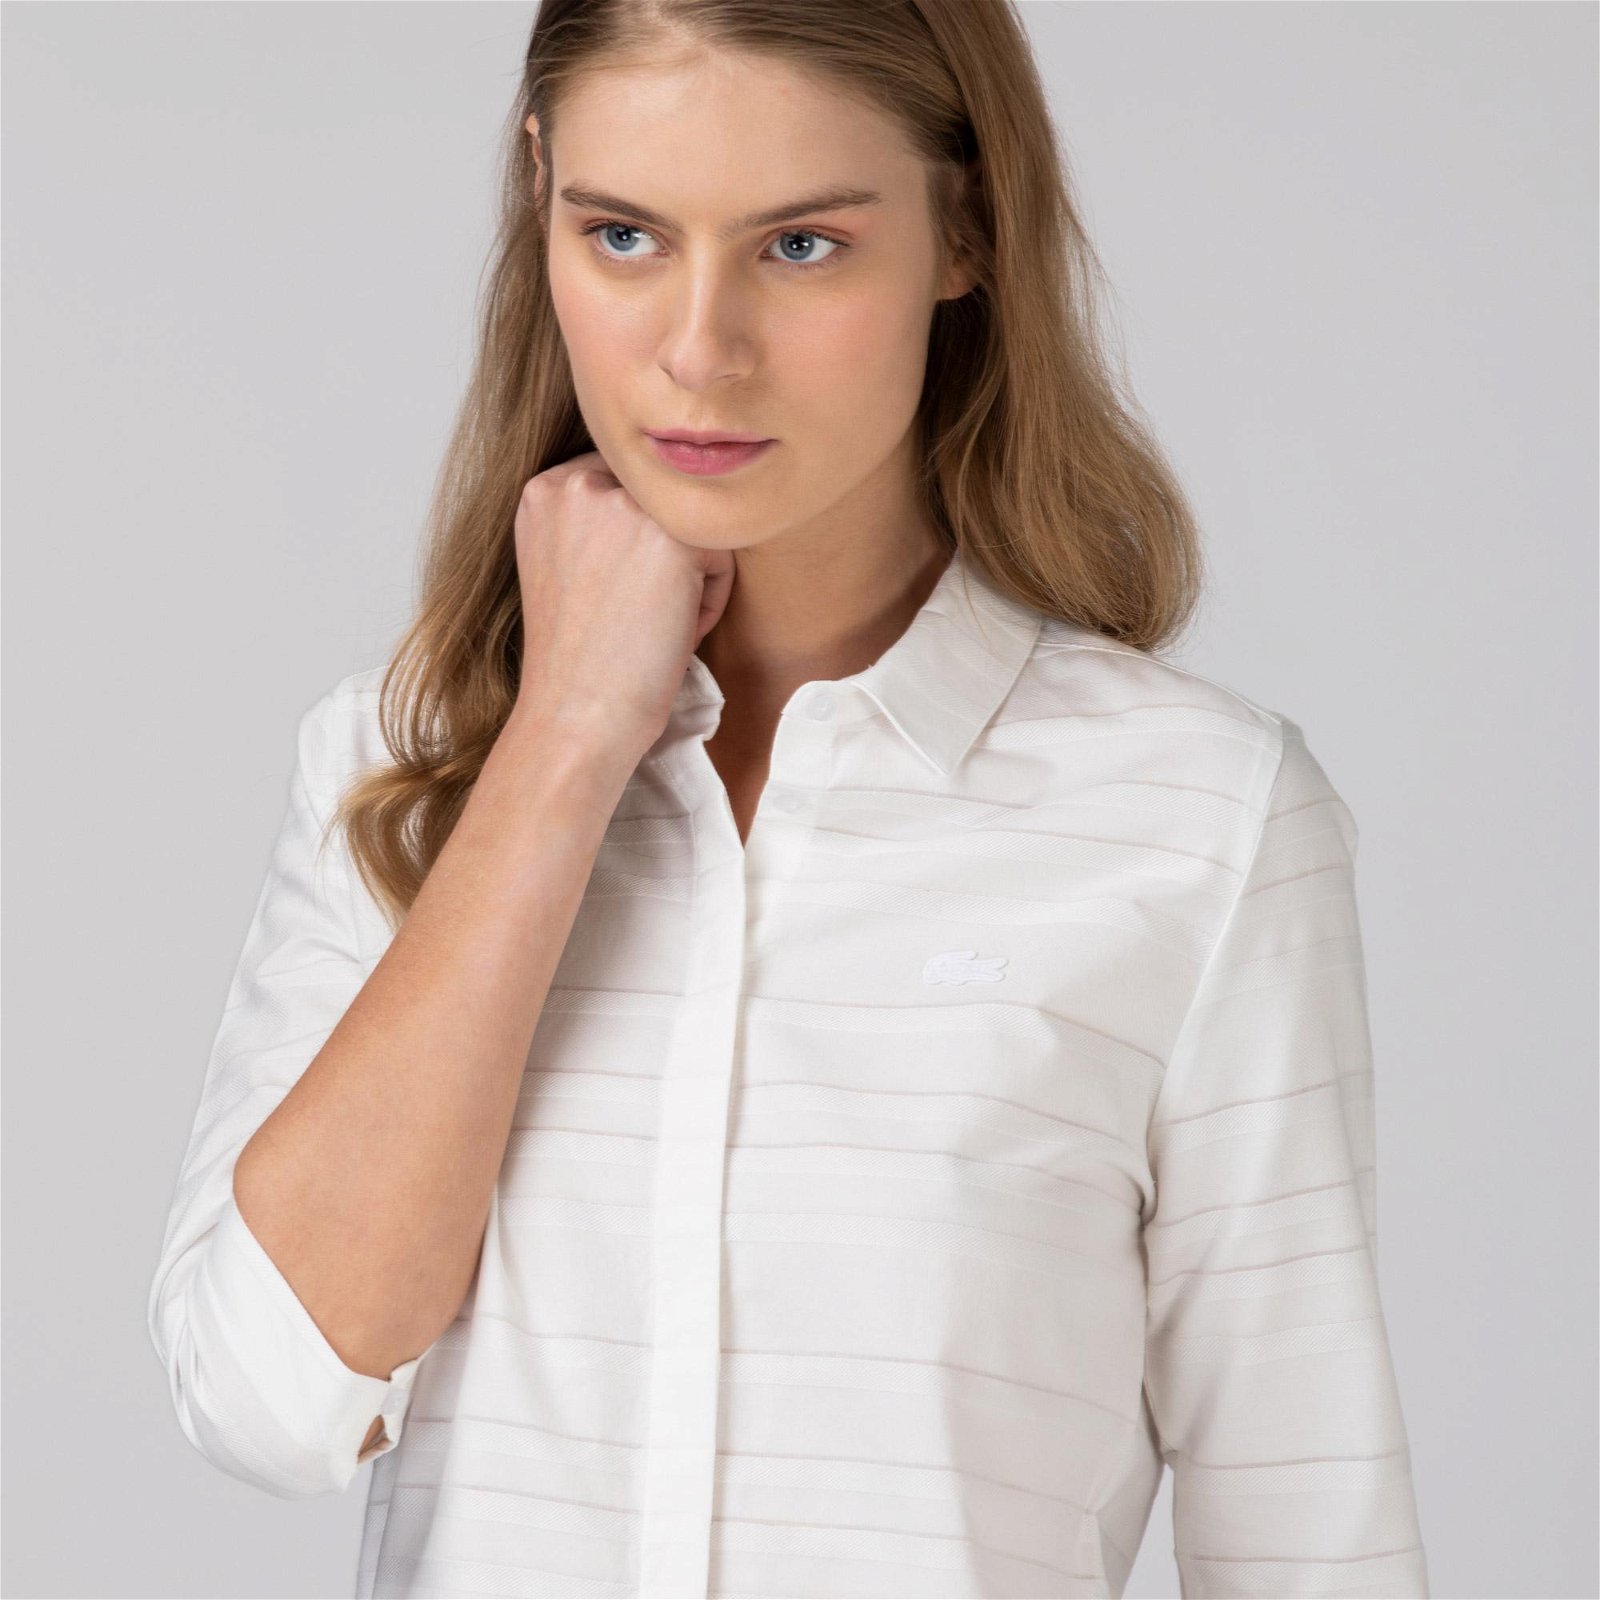 Lacoste dámská tkaná košile s dlouhými rukávy